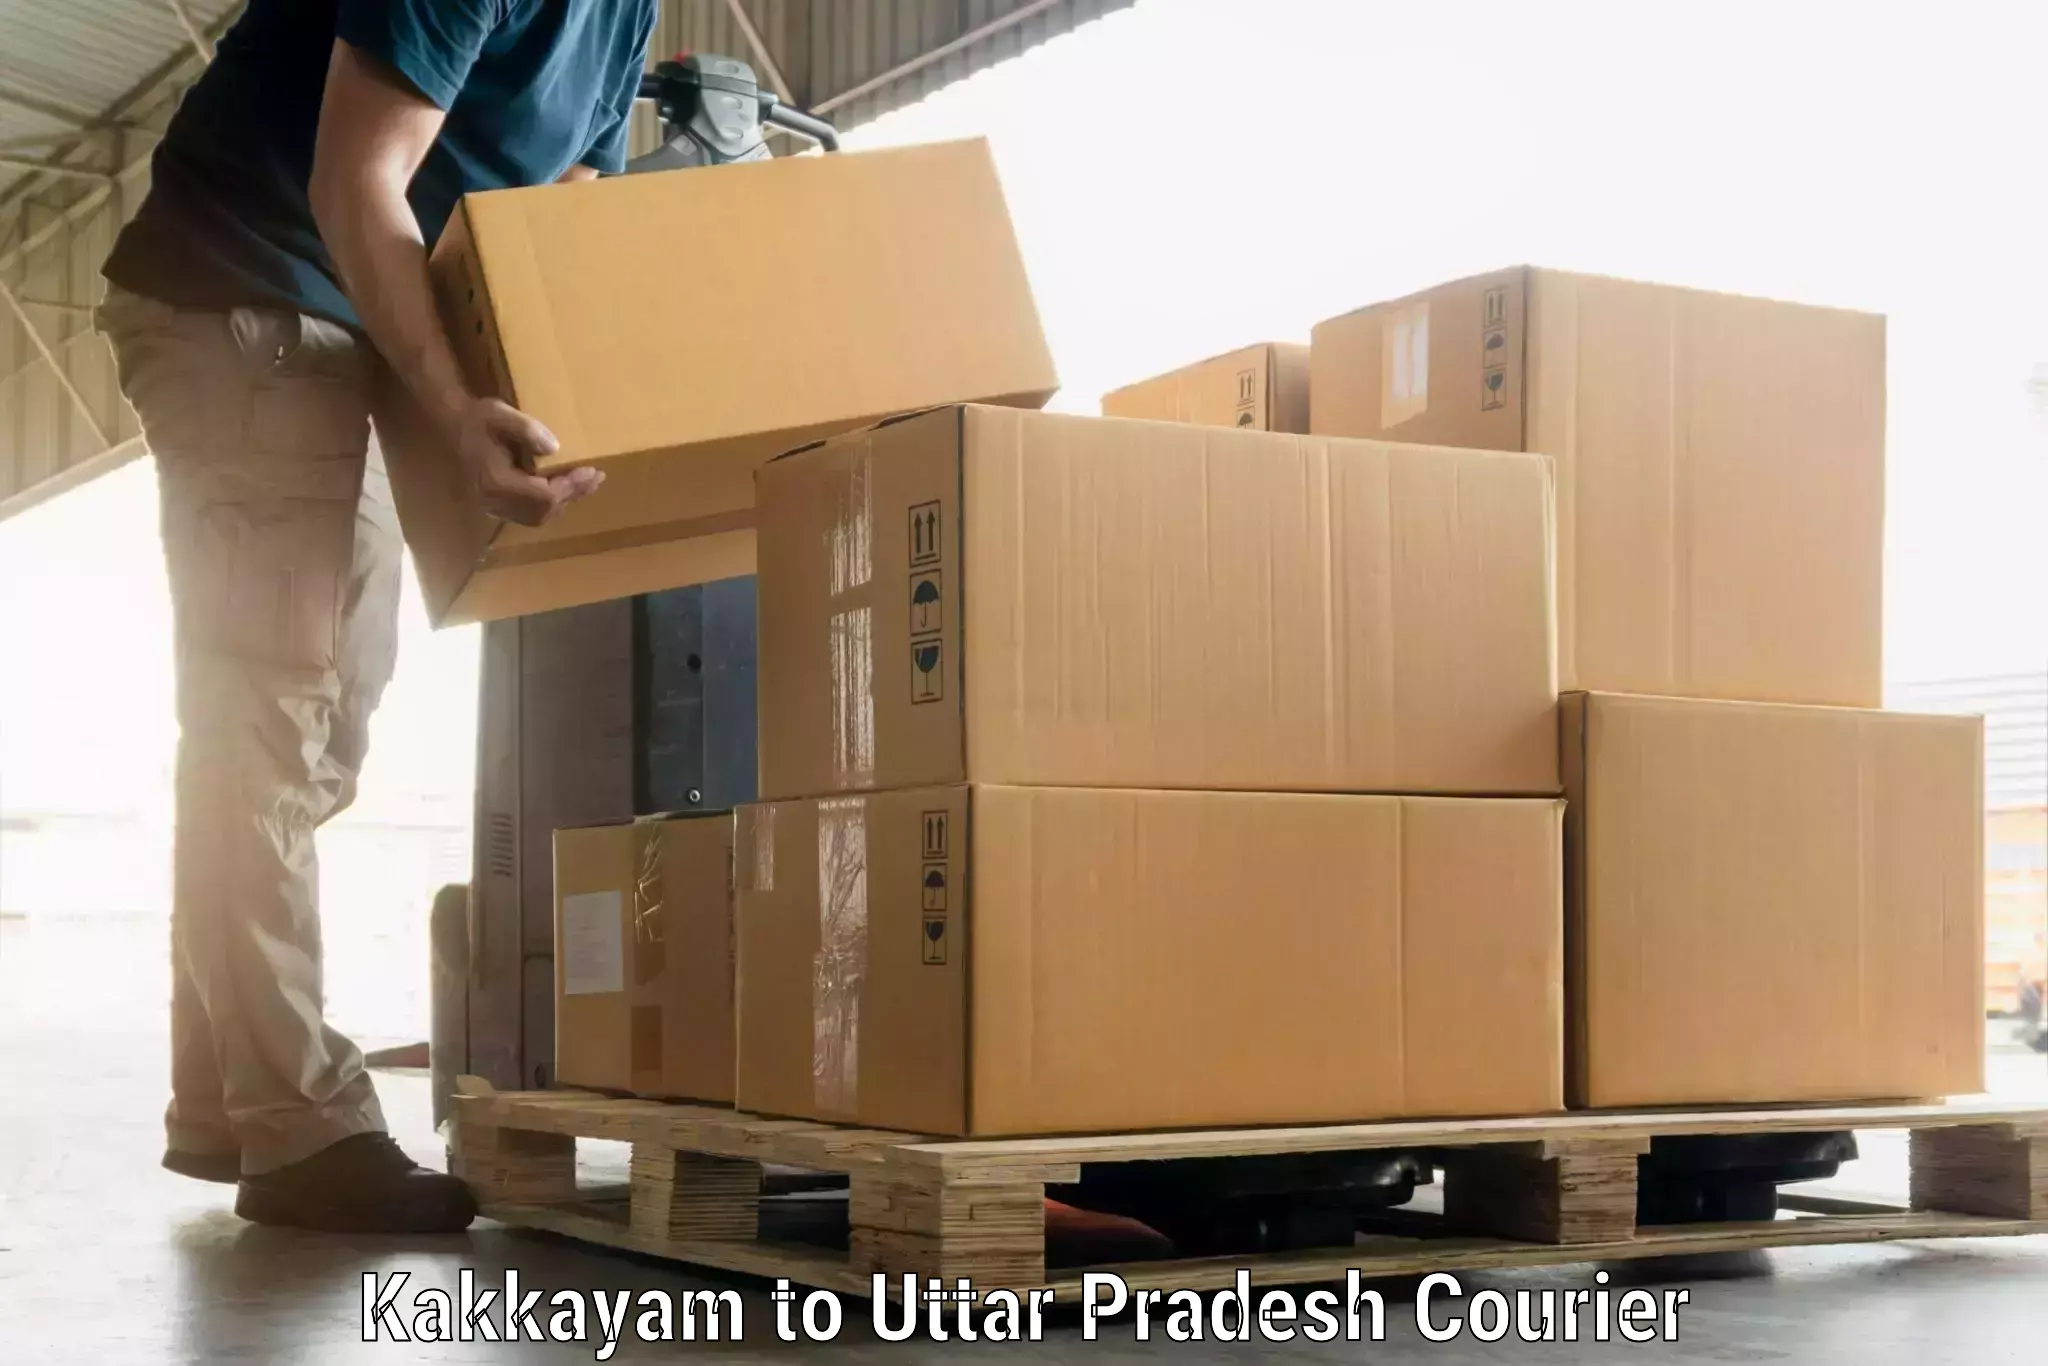 Luggage transport consultancy Kakkayam to Baksha